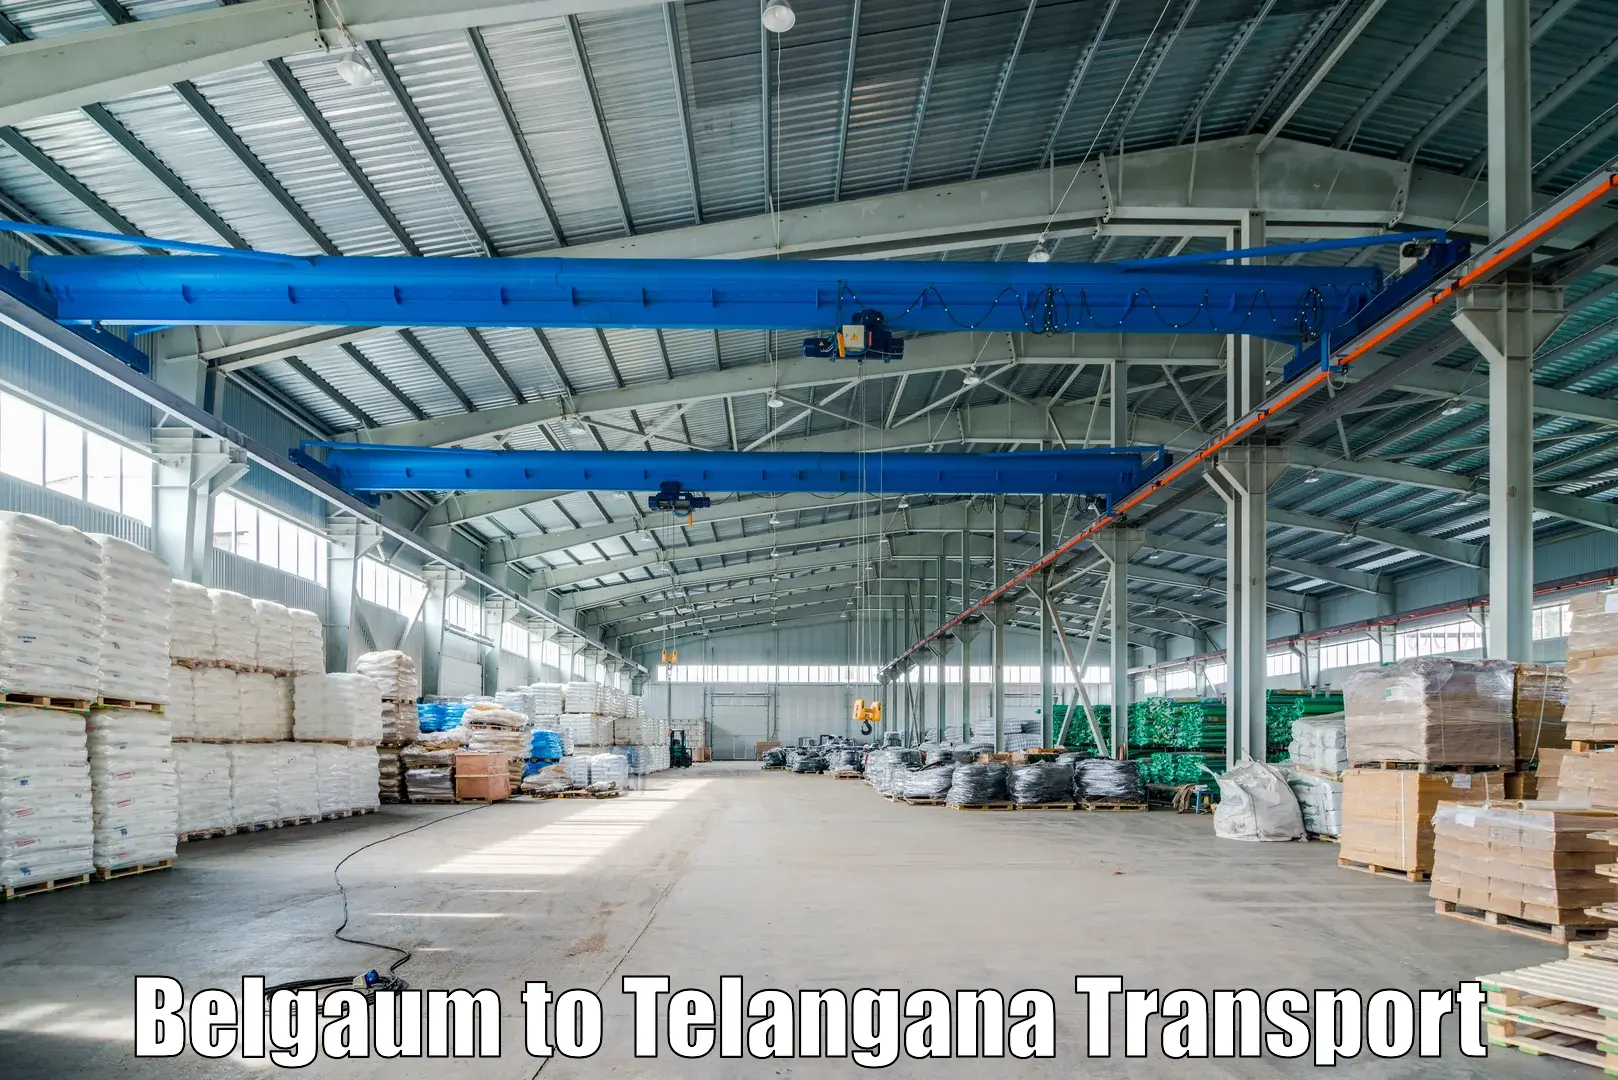 Bike shipping service Belgaum to Telangana